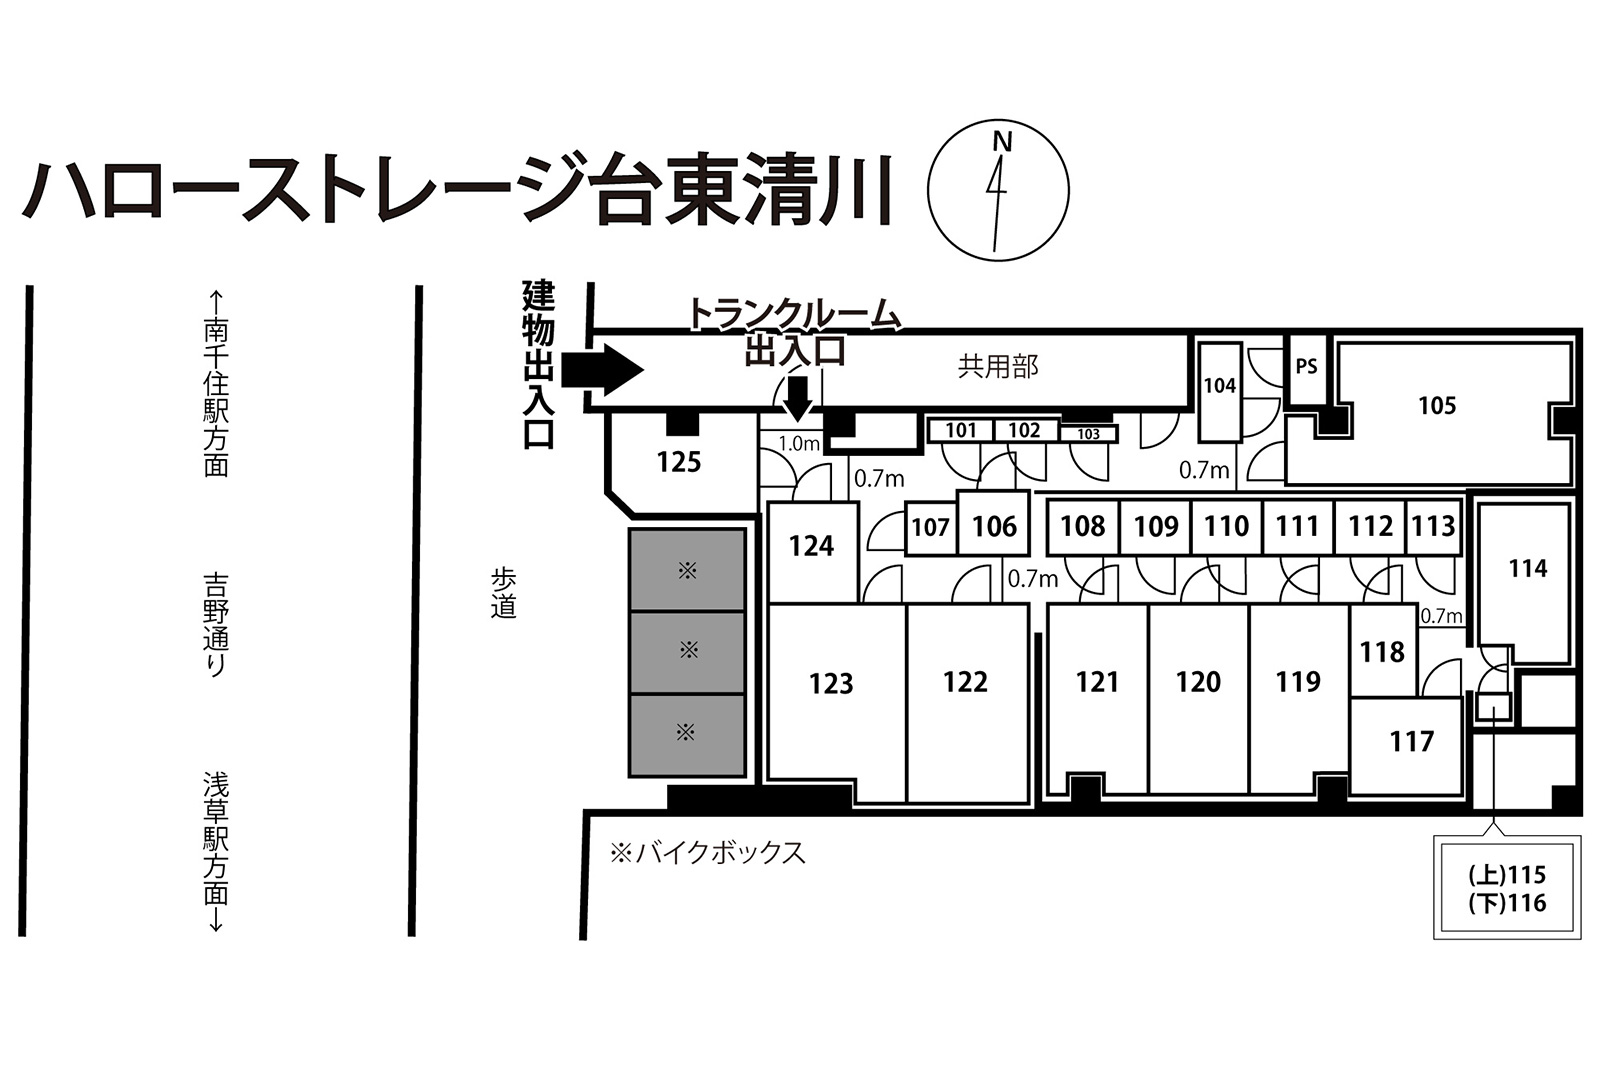 ハローストレージ台東清川 Afterの敷地図